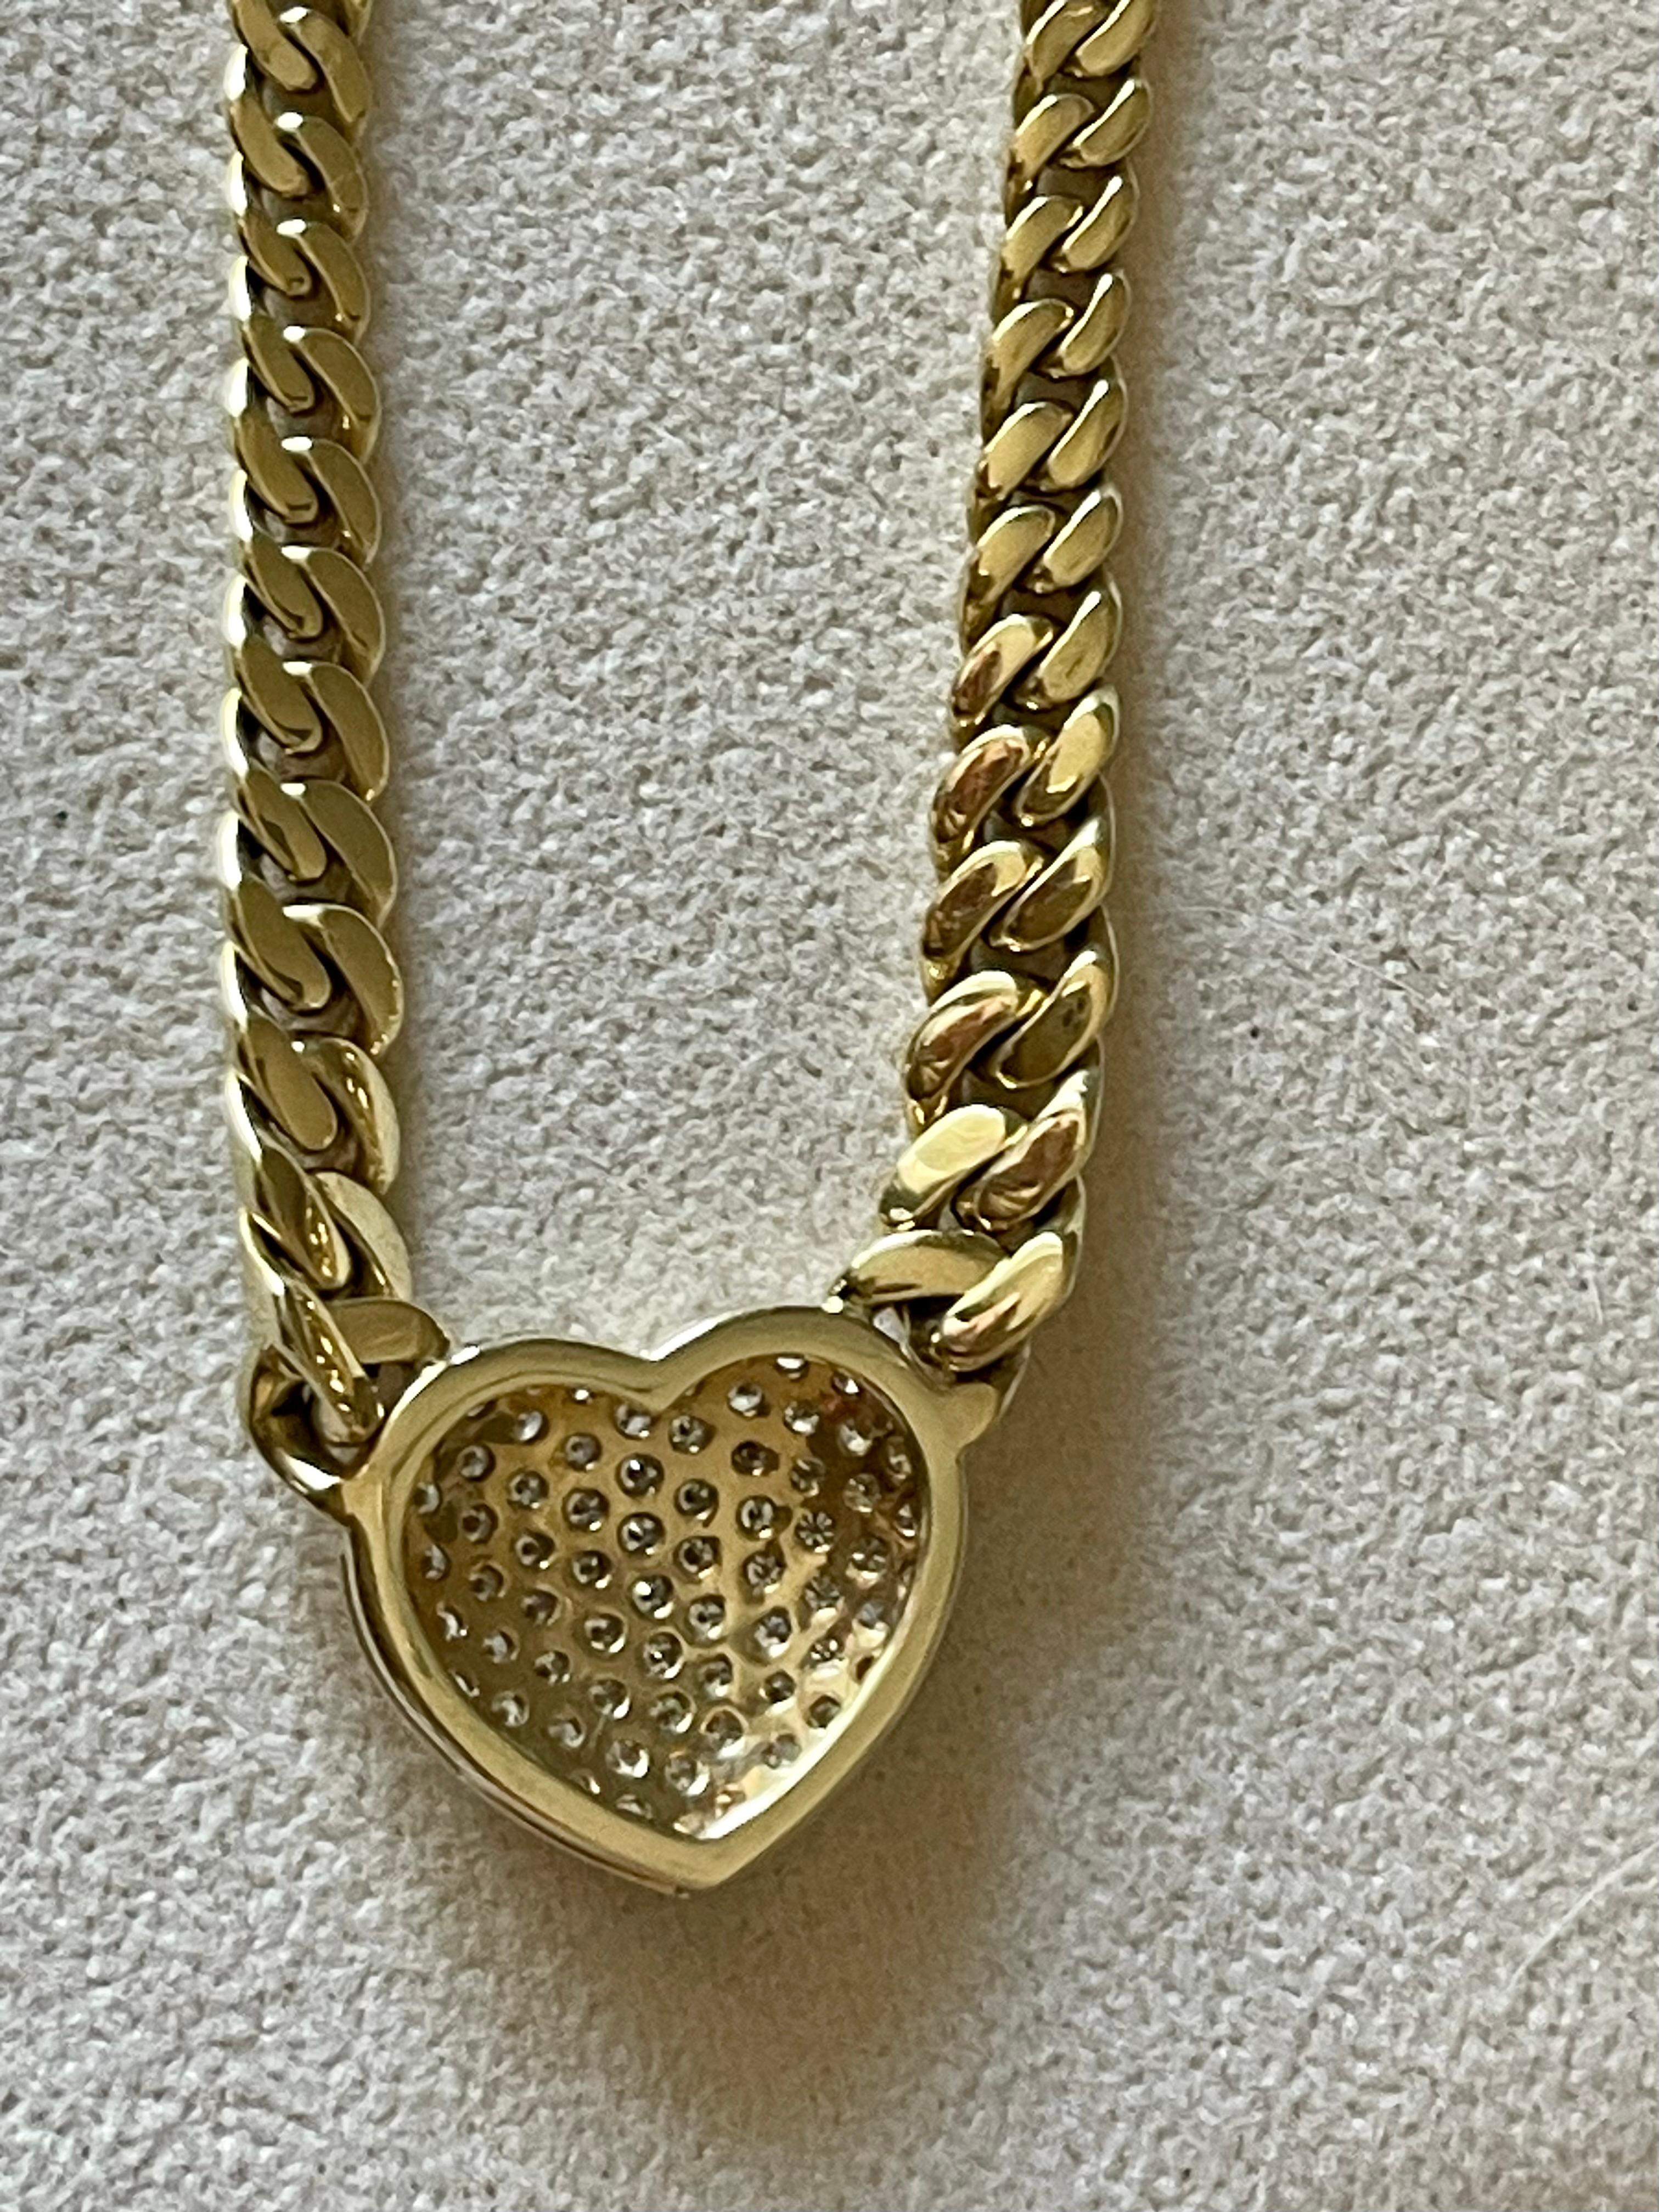 18 karat gold cuban chain